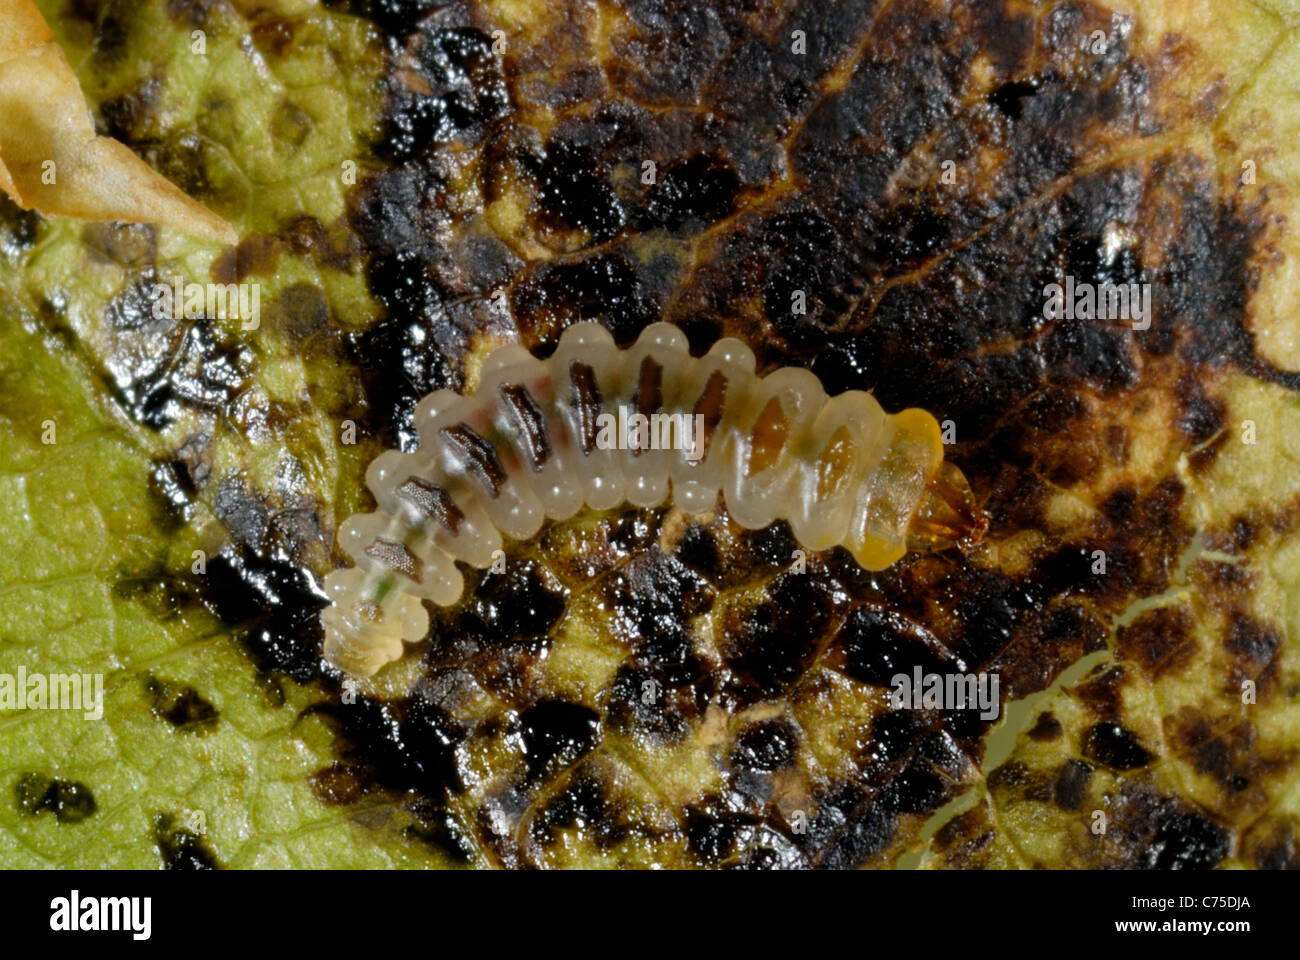 Exposed horse chestnut leafminer (Cameraria ohridella) larva in mine in Aesculus hippocastanum leaf Stock Photo